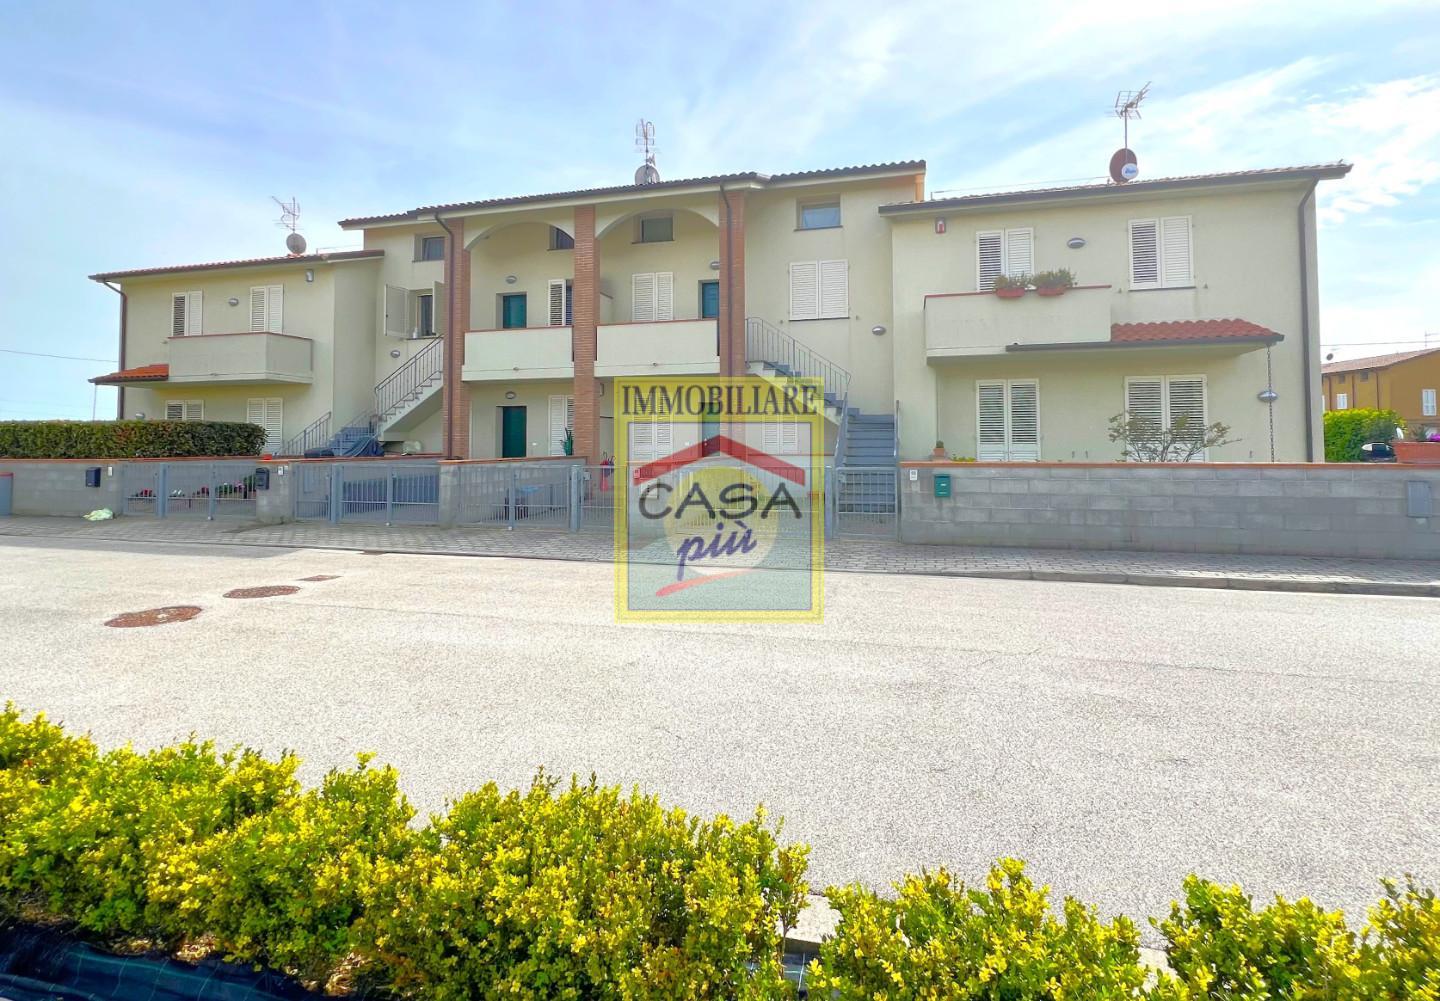 Villetta quadrifamiliare in vendita a Cascina (PI)